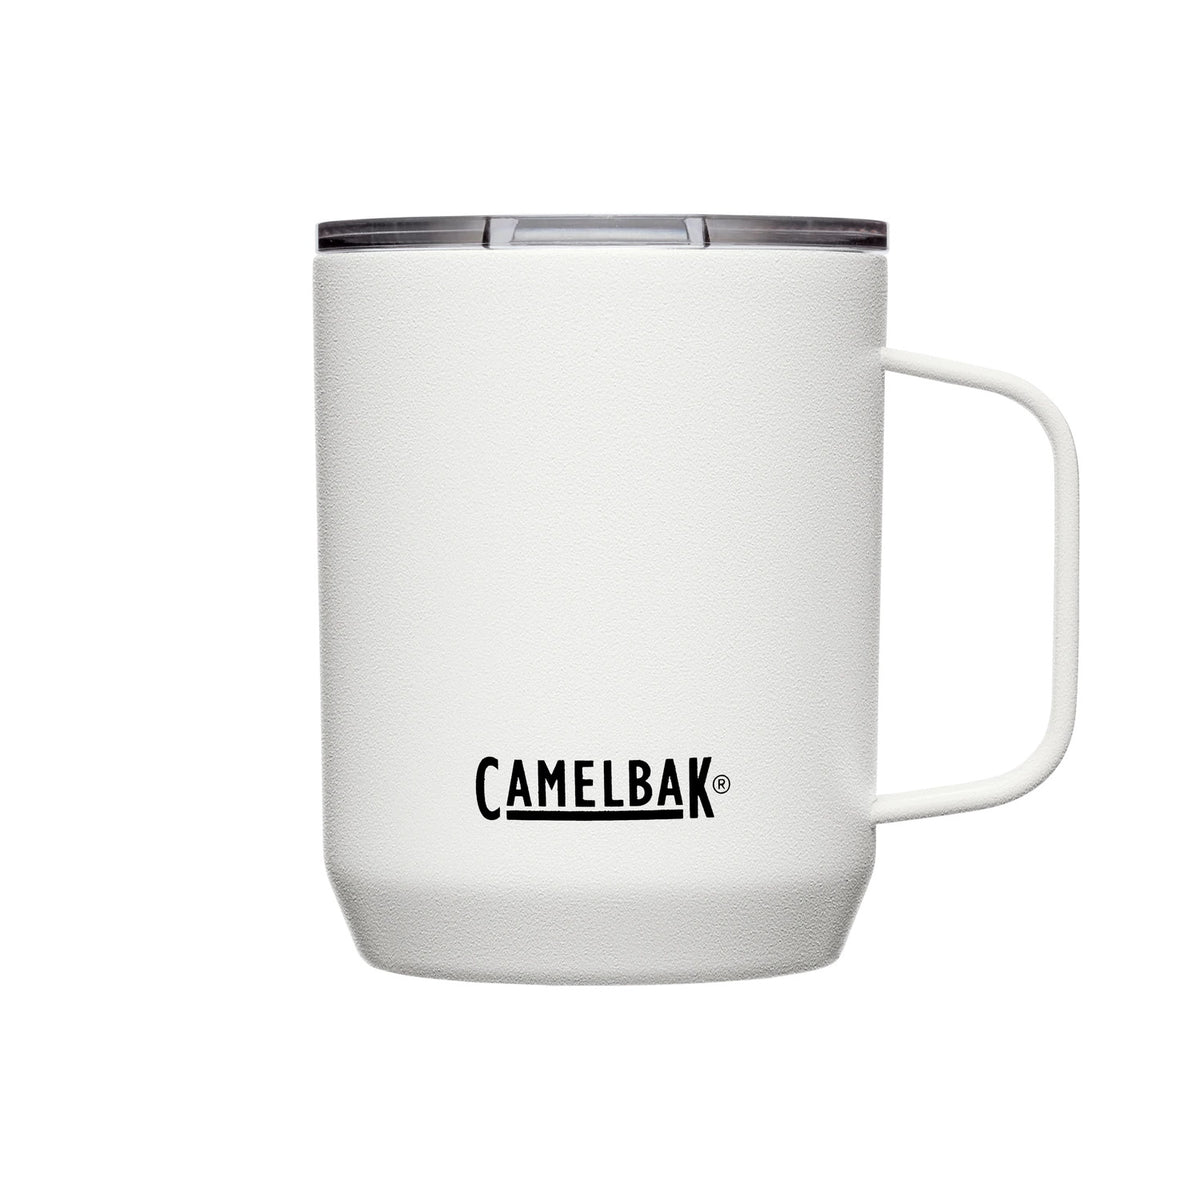 Camelbak Stainless Steel Vacuum Camp Mug 350ml White